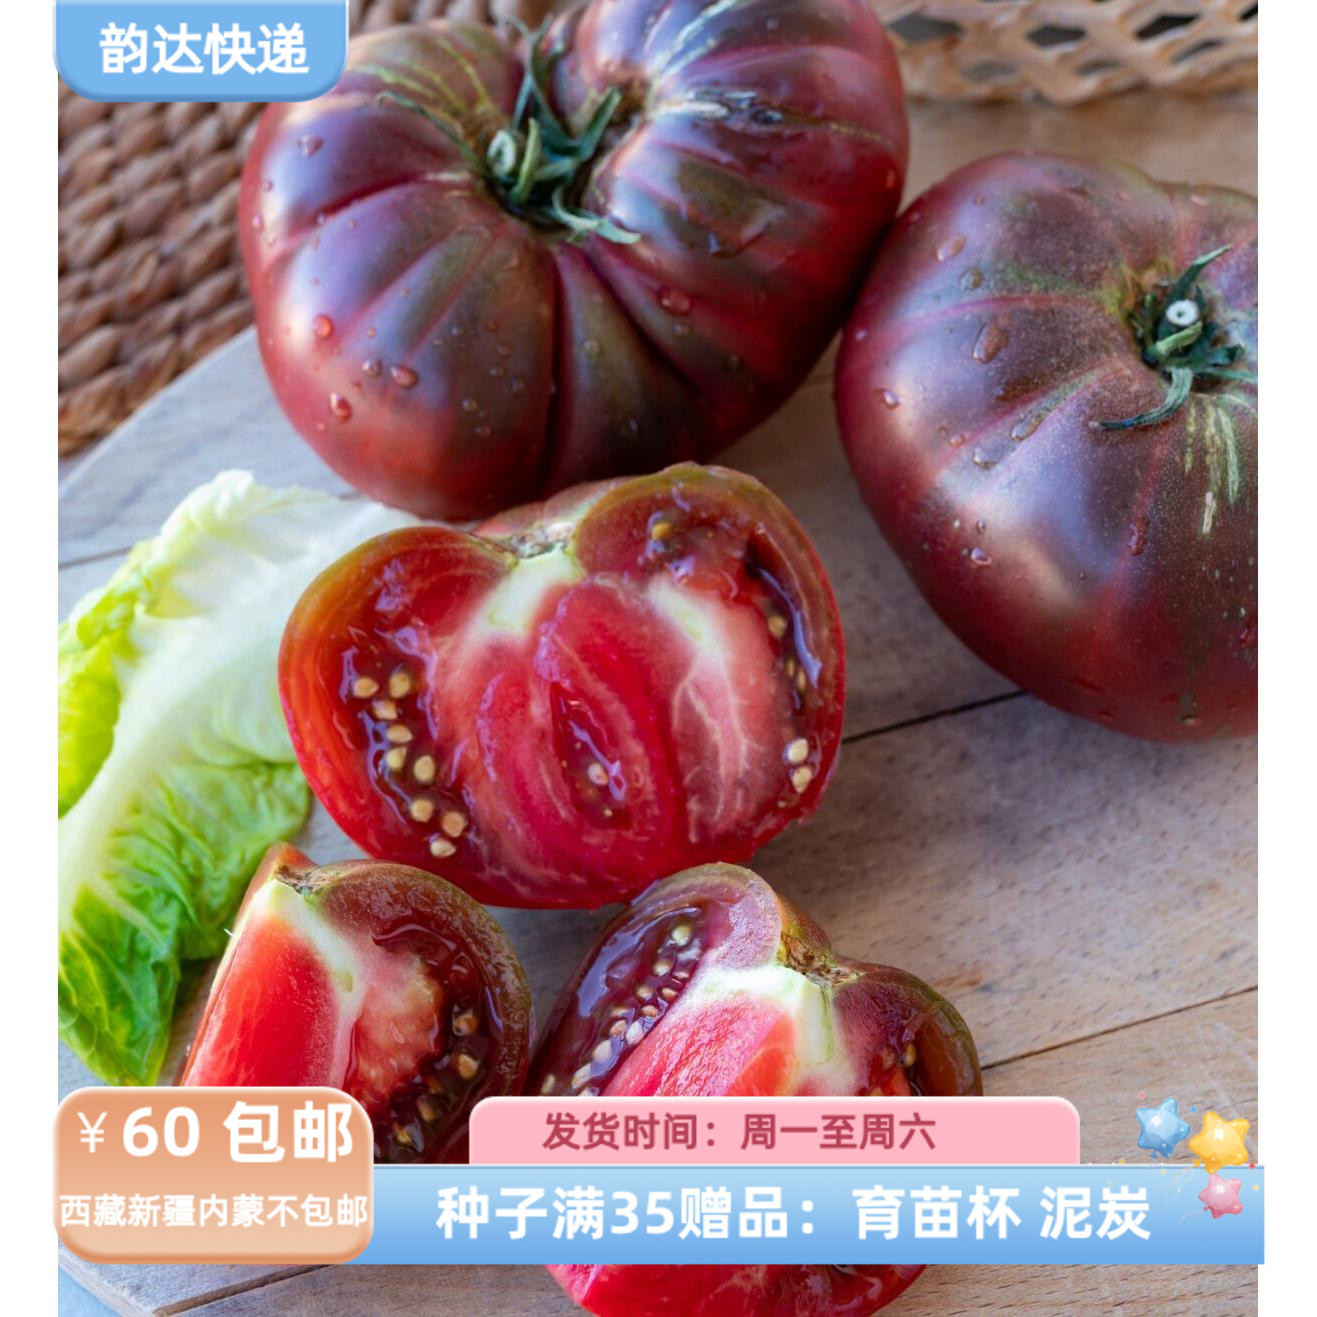 【种子】传家宝种子 无限生长型 番茄西红柿 黑色克里米亚